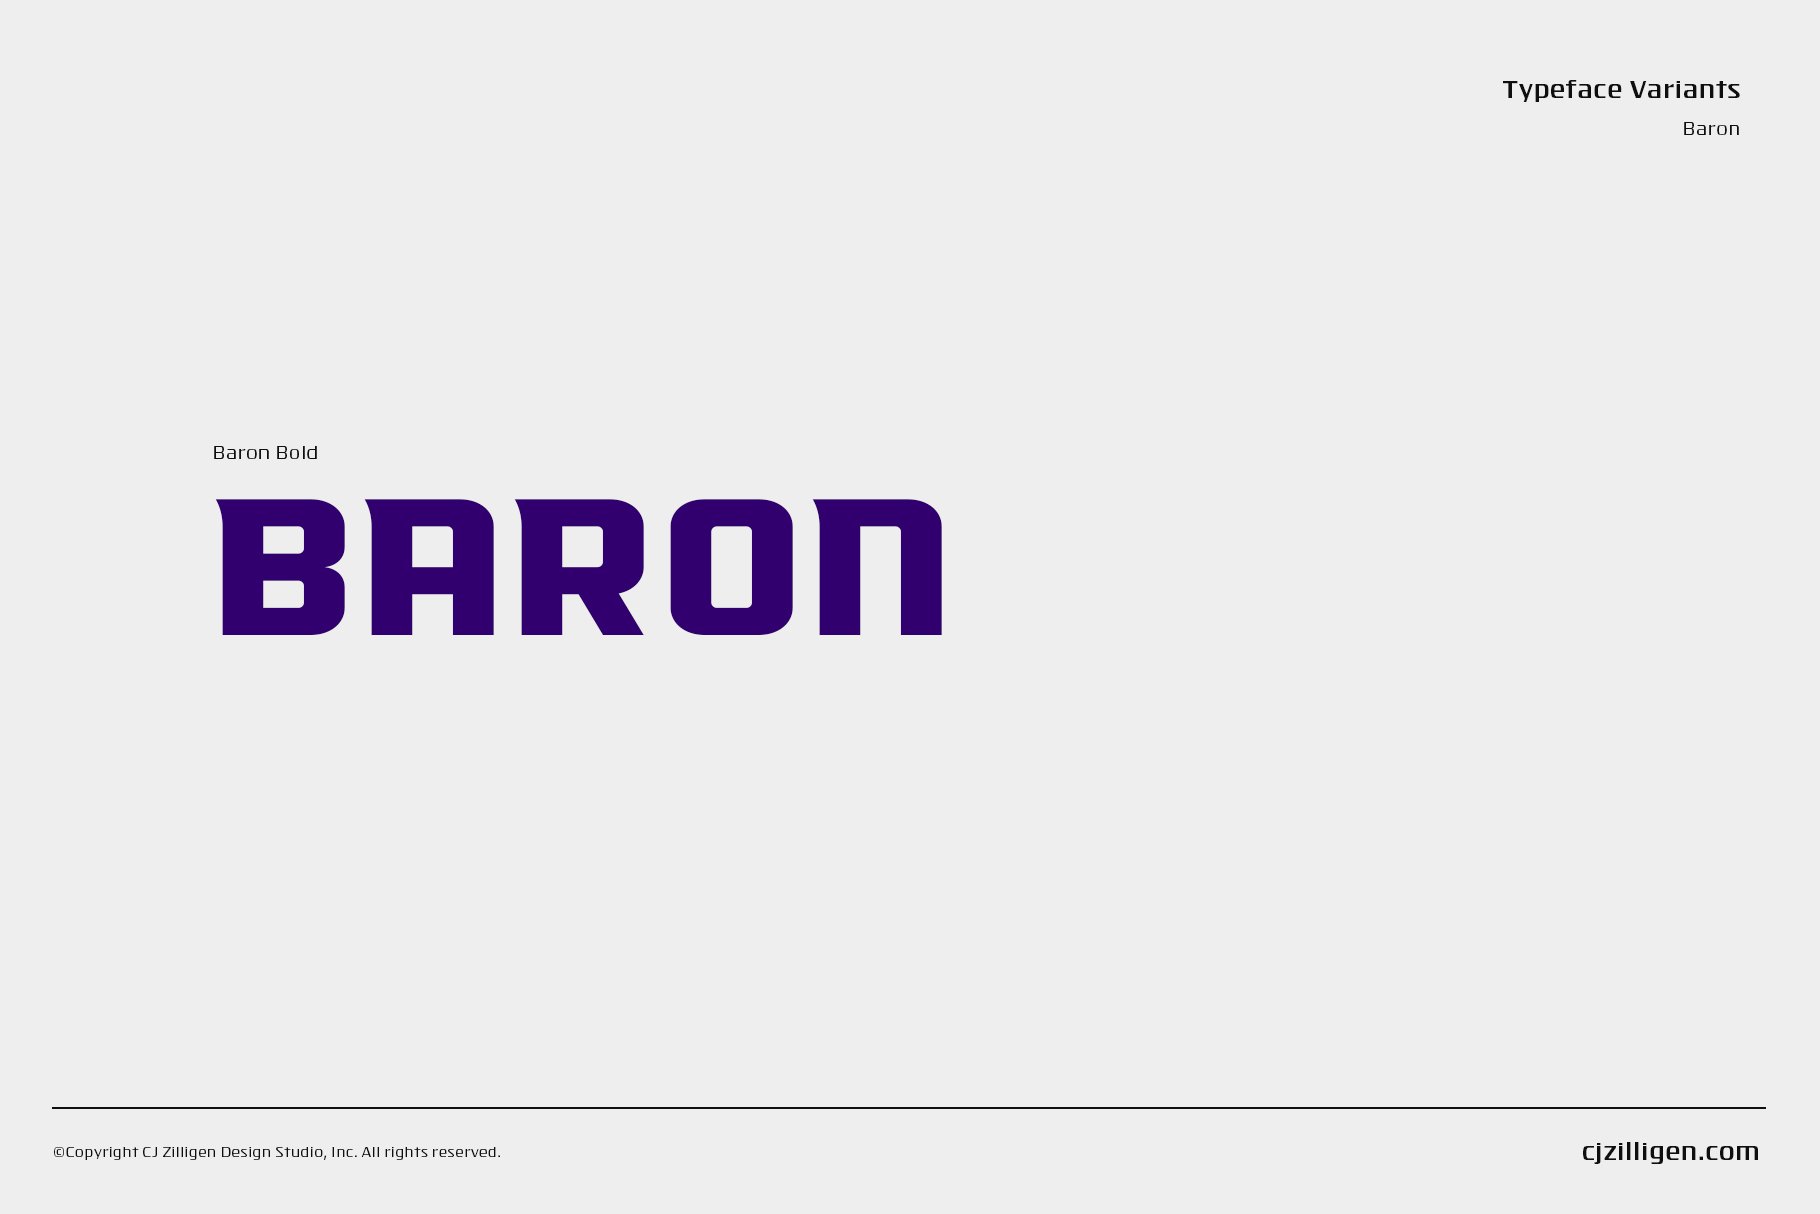 baron cm 1820x1214 cb 291